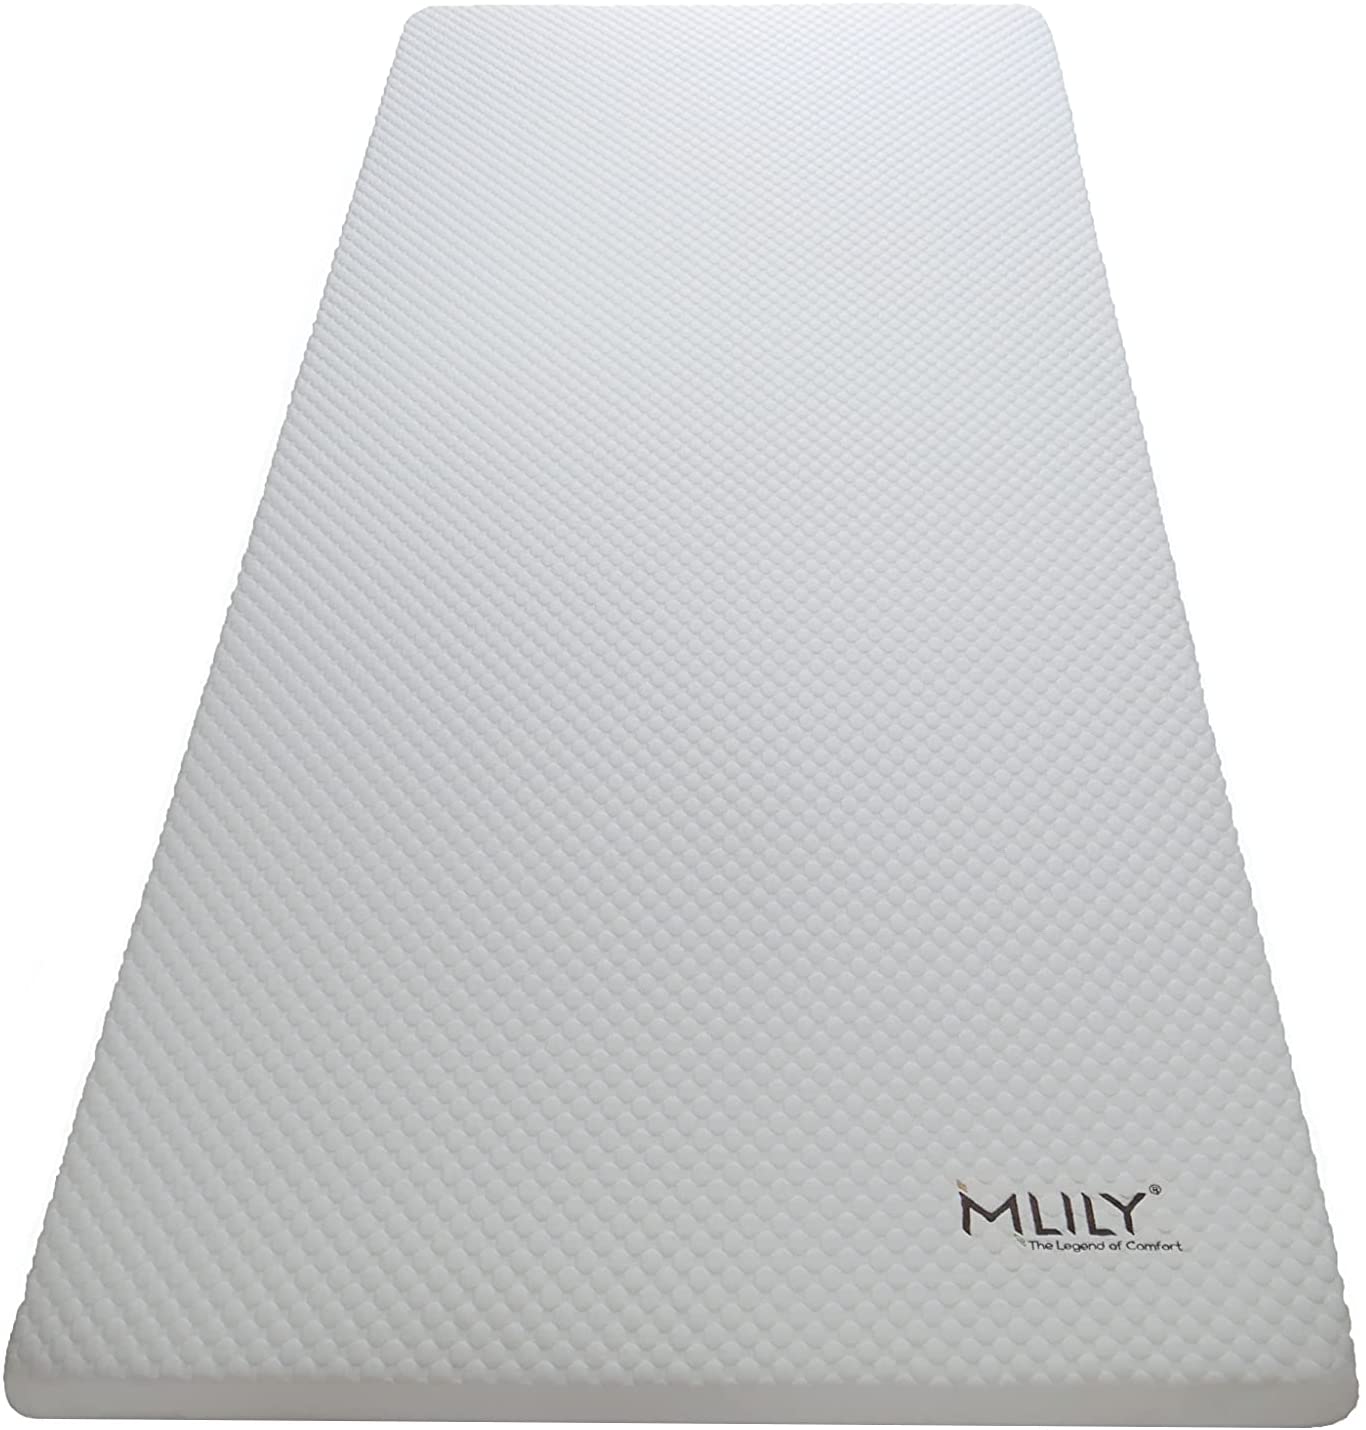 Mlily EBI - A2-90.6